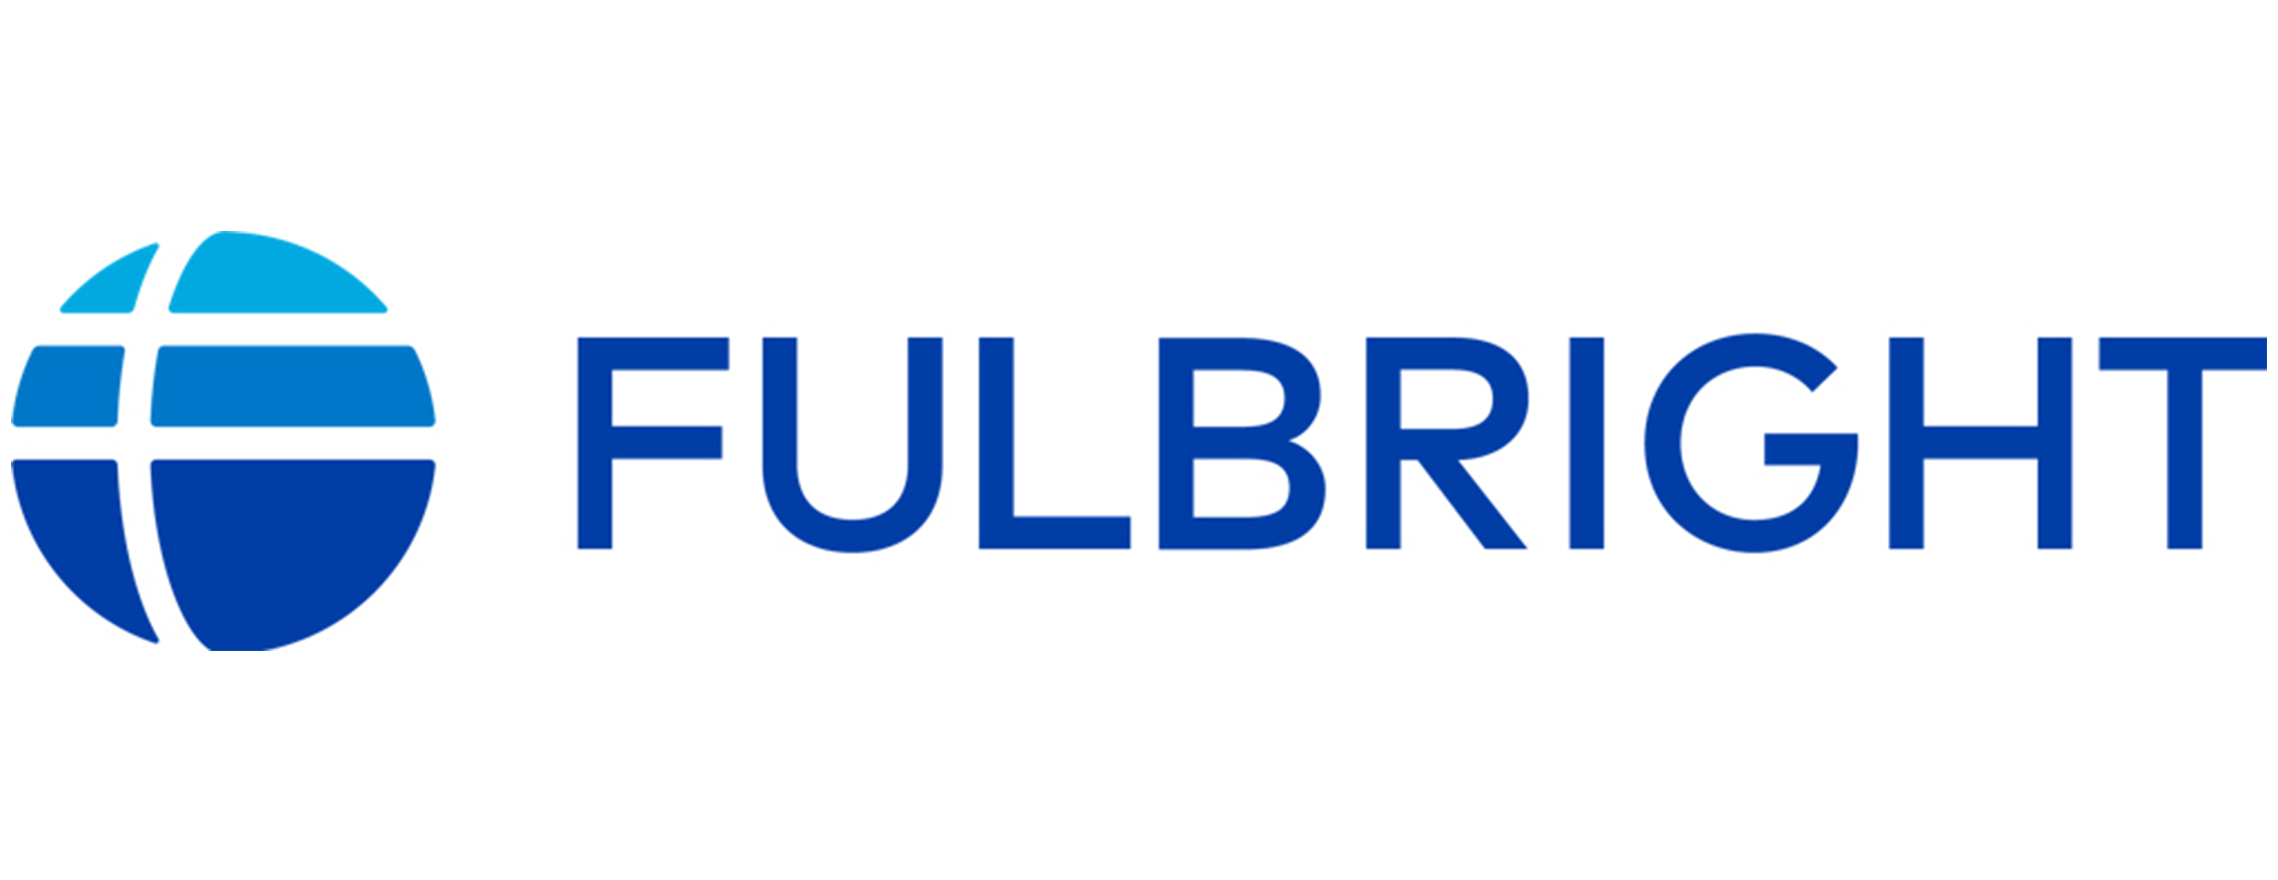 fulbright-logo-new-final-1.jpg